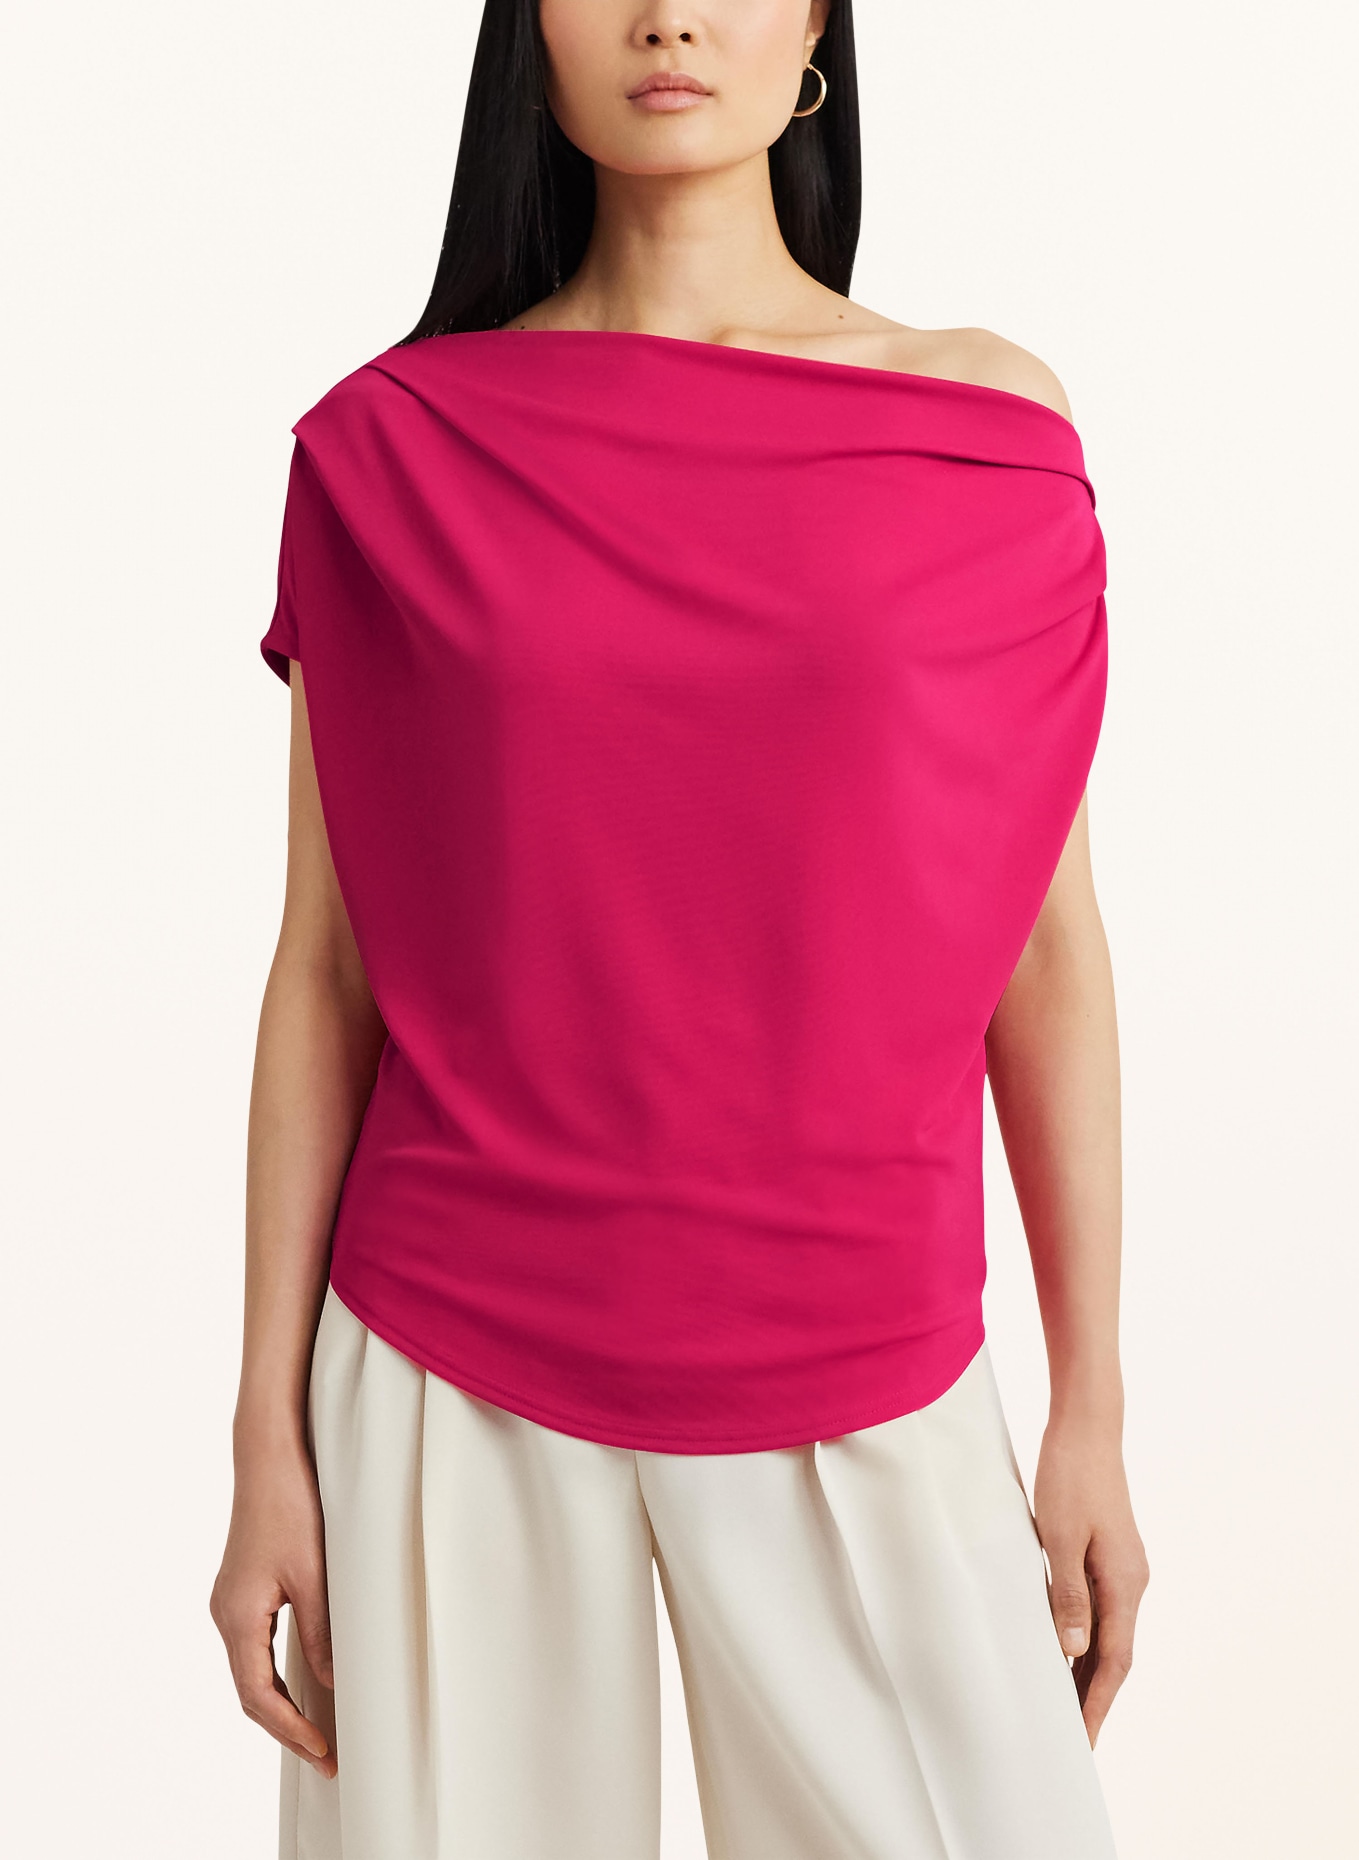 LAUREN RALPH LAUREN One-shoulder top, Color: PINK (Image 4)